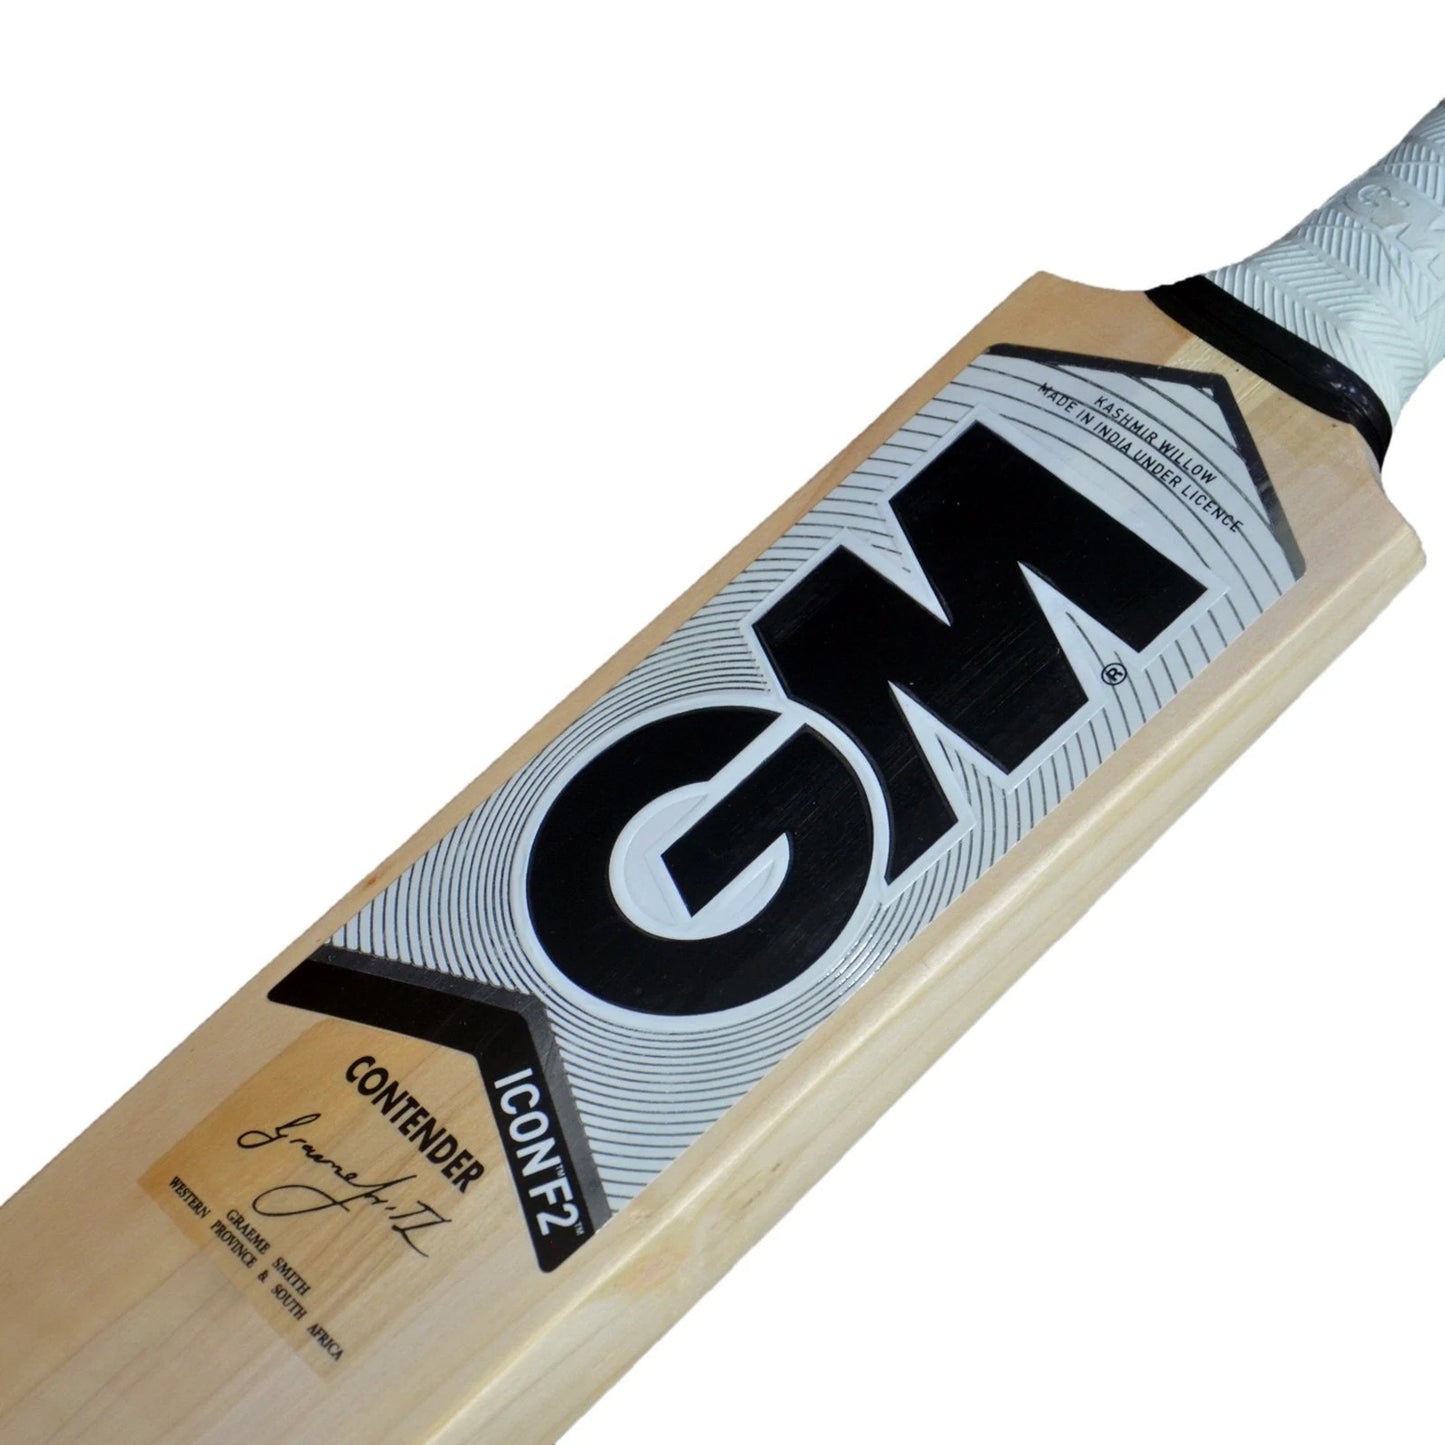 GM Icon F2 Contender Kashmir Willow Cricket Bat - Best Price online Prokicksports.com